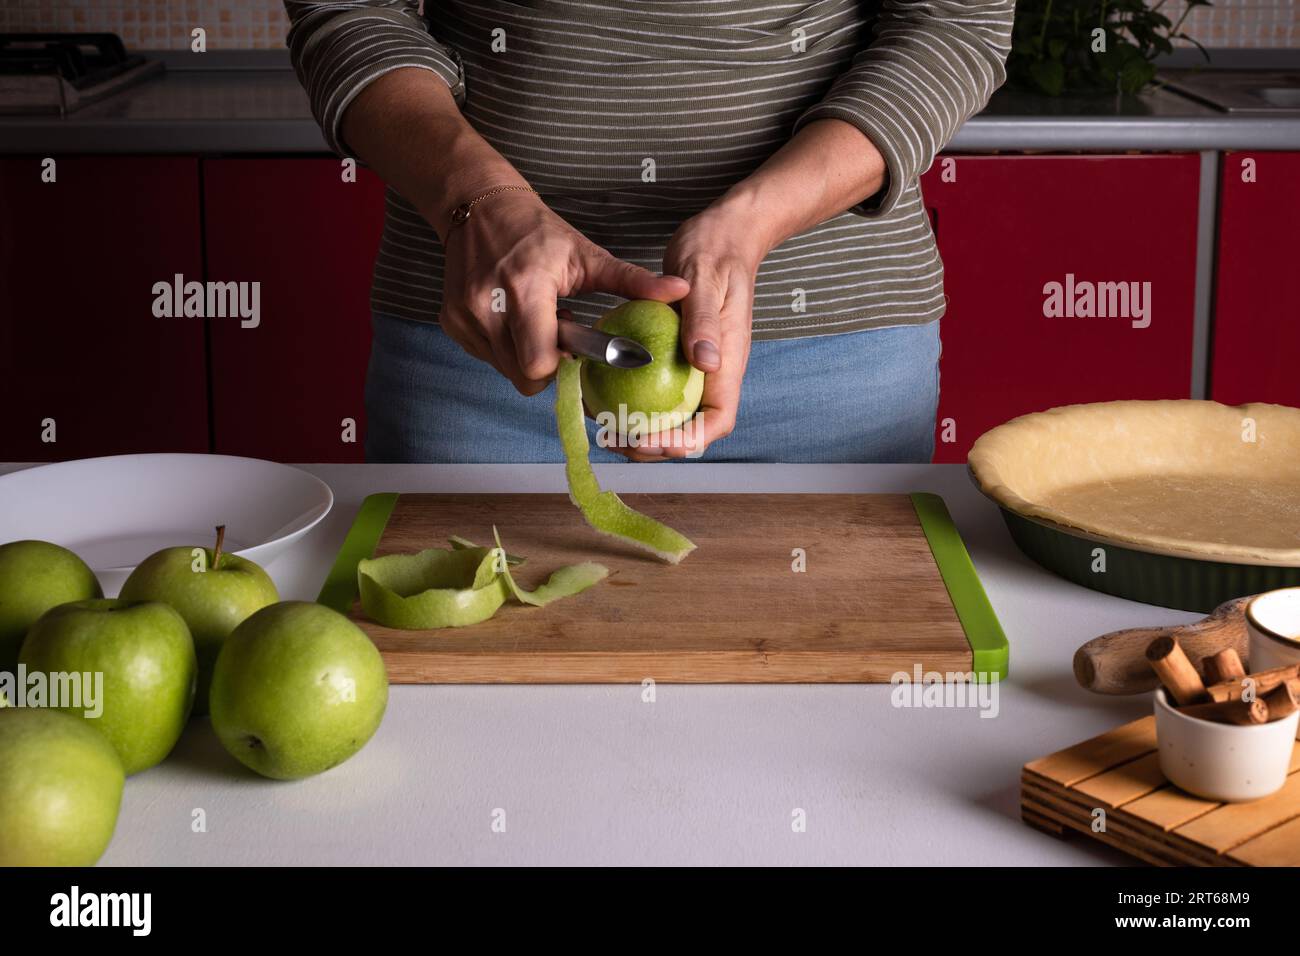 La femme épluche les pommes pour préparer la tarte aux pommes dans la cuisine. Les mains féminines authentiques épluchent une pomme avec un couteau. Cuisson de la tarte aux pommes, étape de recette Banque D'Images